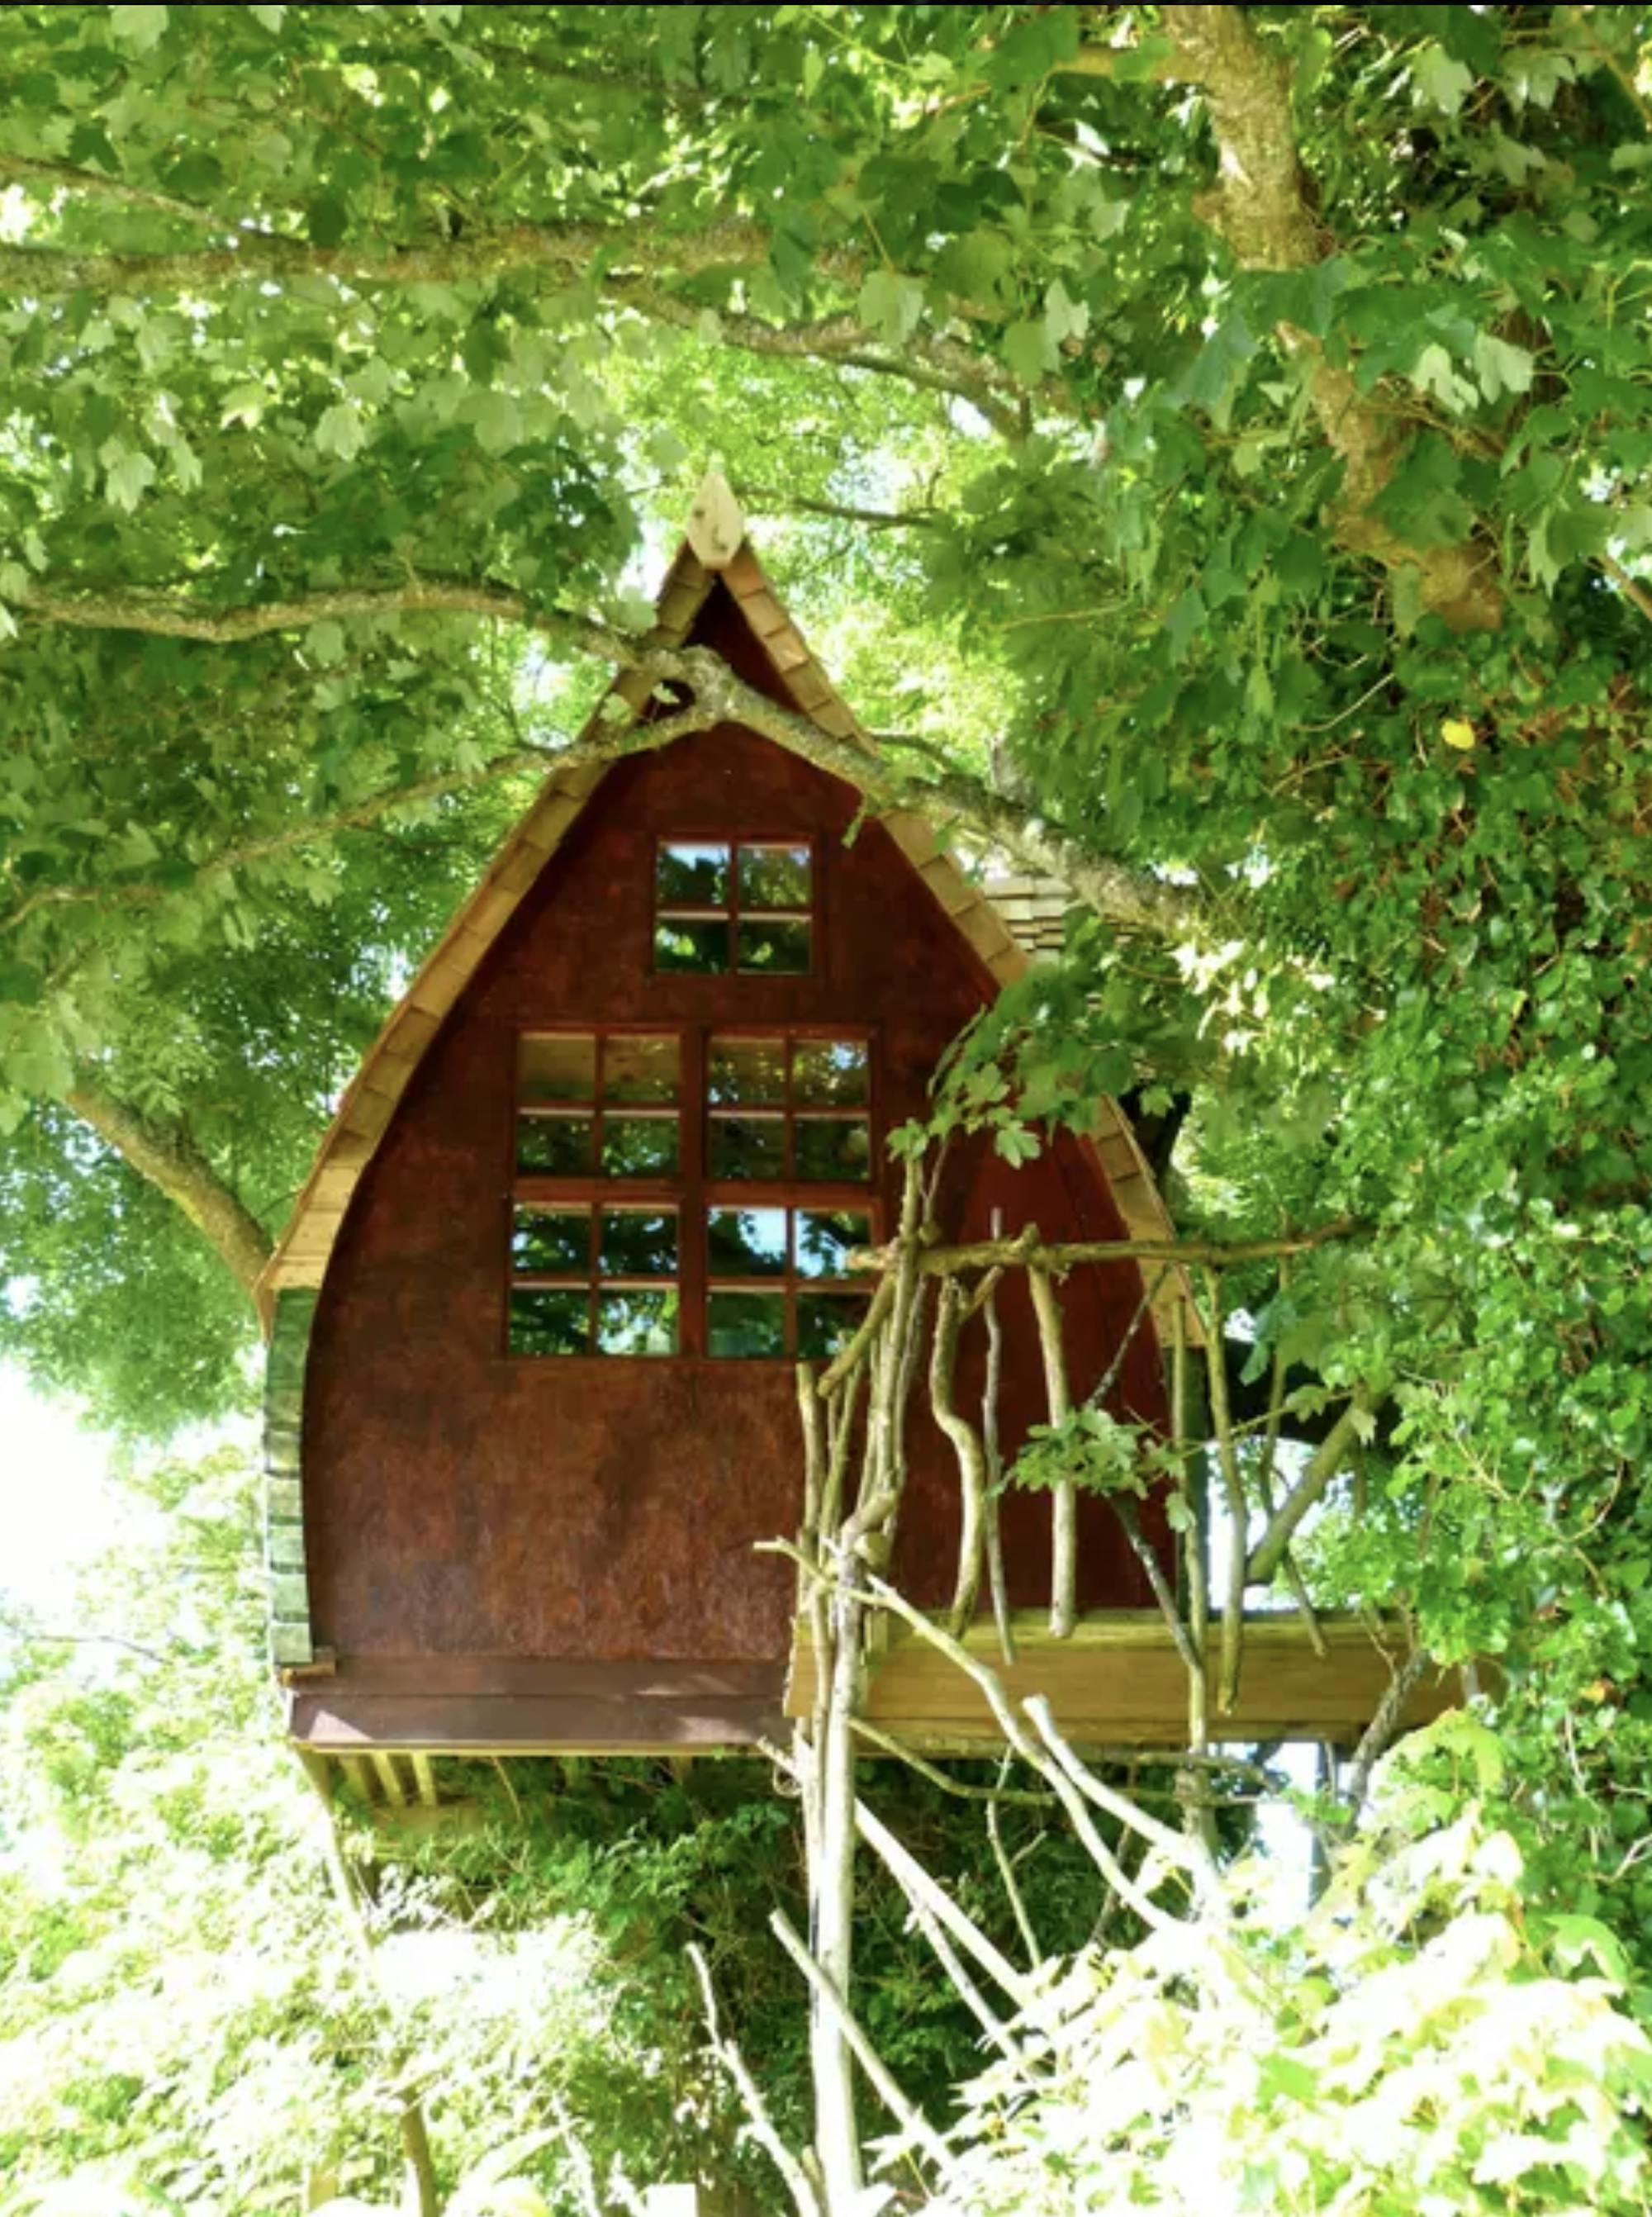 Das Baumhaus befindet sich mitten in der Natur, umgeben von zahlreichen Bäumen. Die Form des kleinen Baumhauses ähnelt an ein kleines, süßes Hexenhaus. 